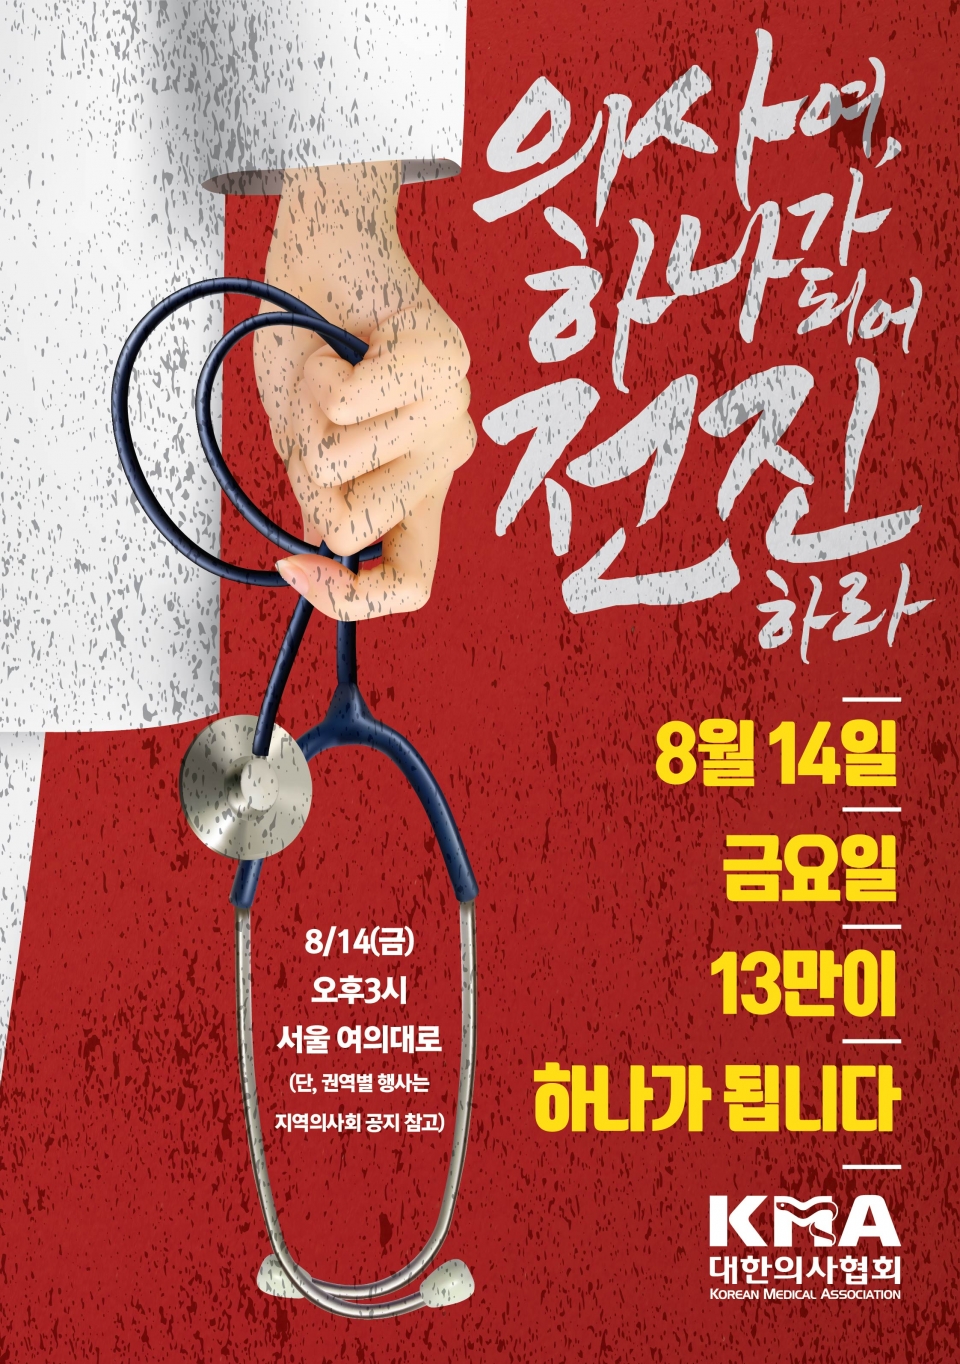 대한의사협회가 제작한 오는 14일 전국의사 총파업 관련 포스터